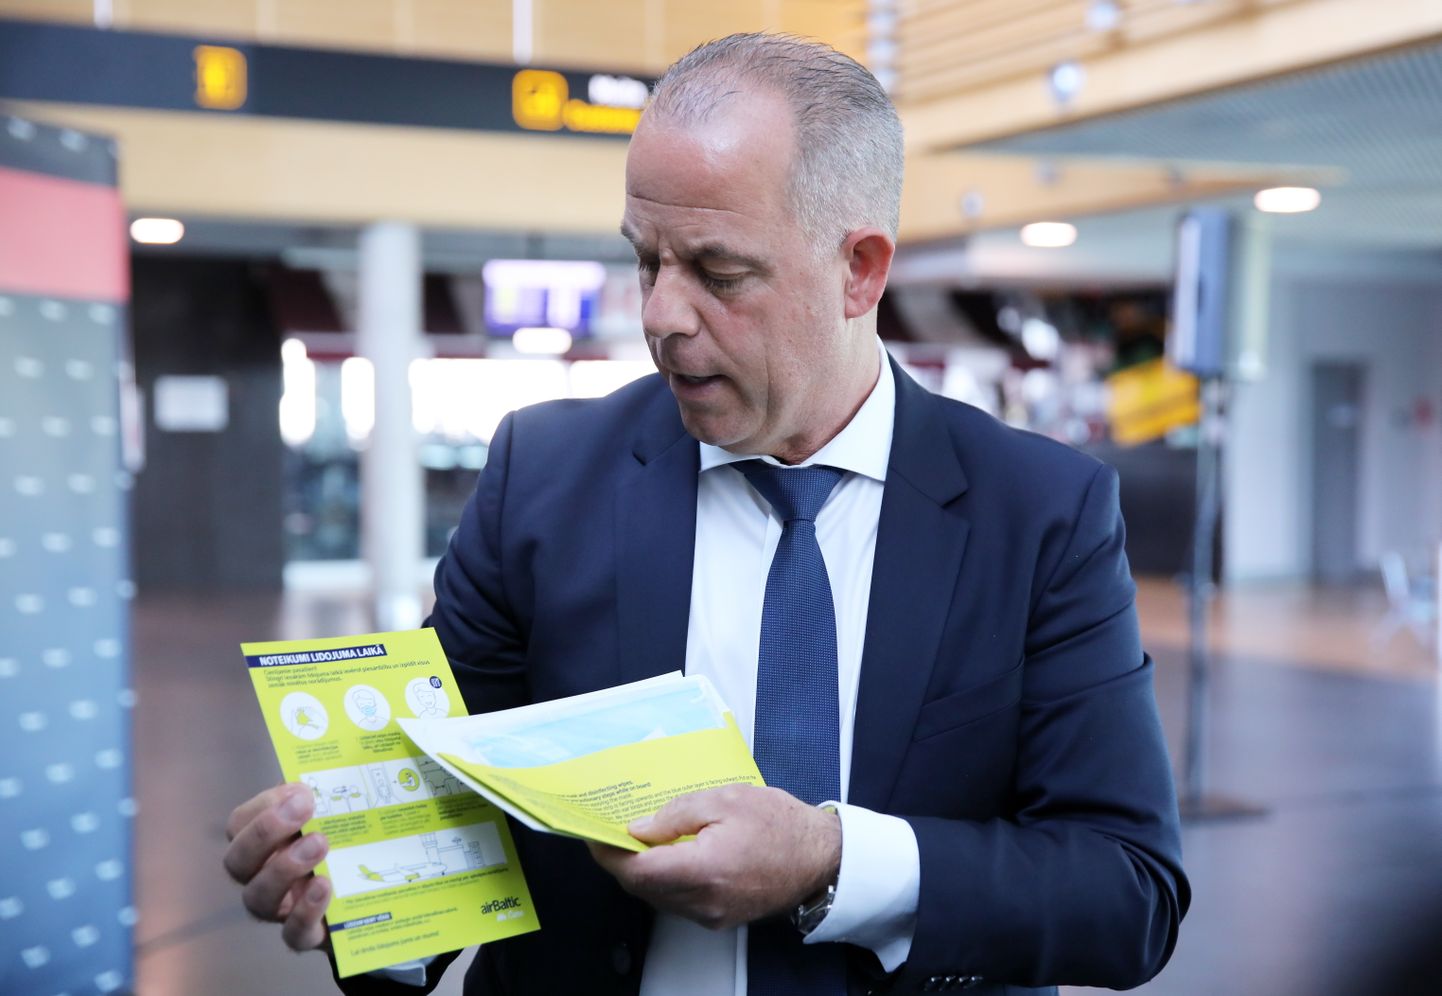 Nacionālās lidsabiedrības "airBaltic" valdes priekšsēdētājs Martins Gauss piedalās preses konferencē, kurā informē par lidojumu atsākšanu starp Baltijas valstīm, kā arī lidostā un "airBaltic" ieviestajiem epidemioloģiskās drošības pasākumiem  Covid-19 pandēmijas laikā.